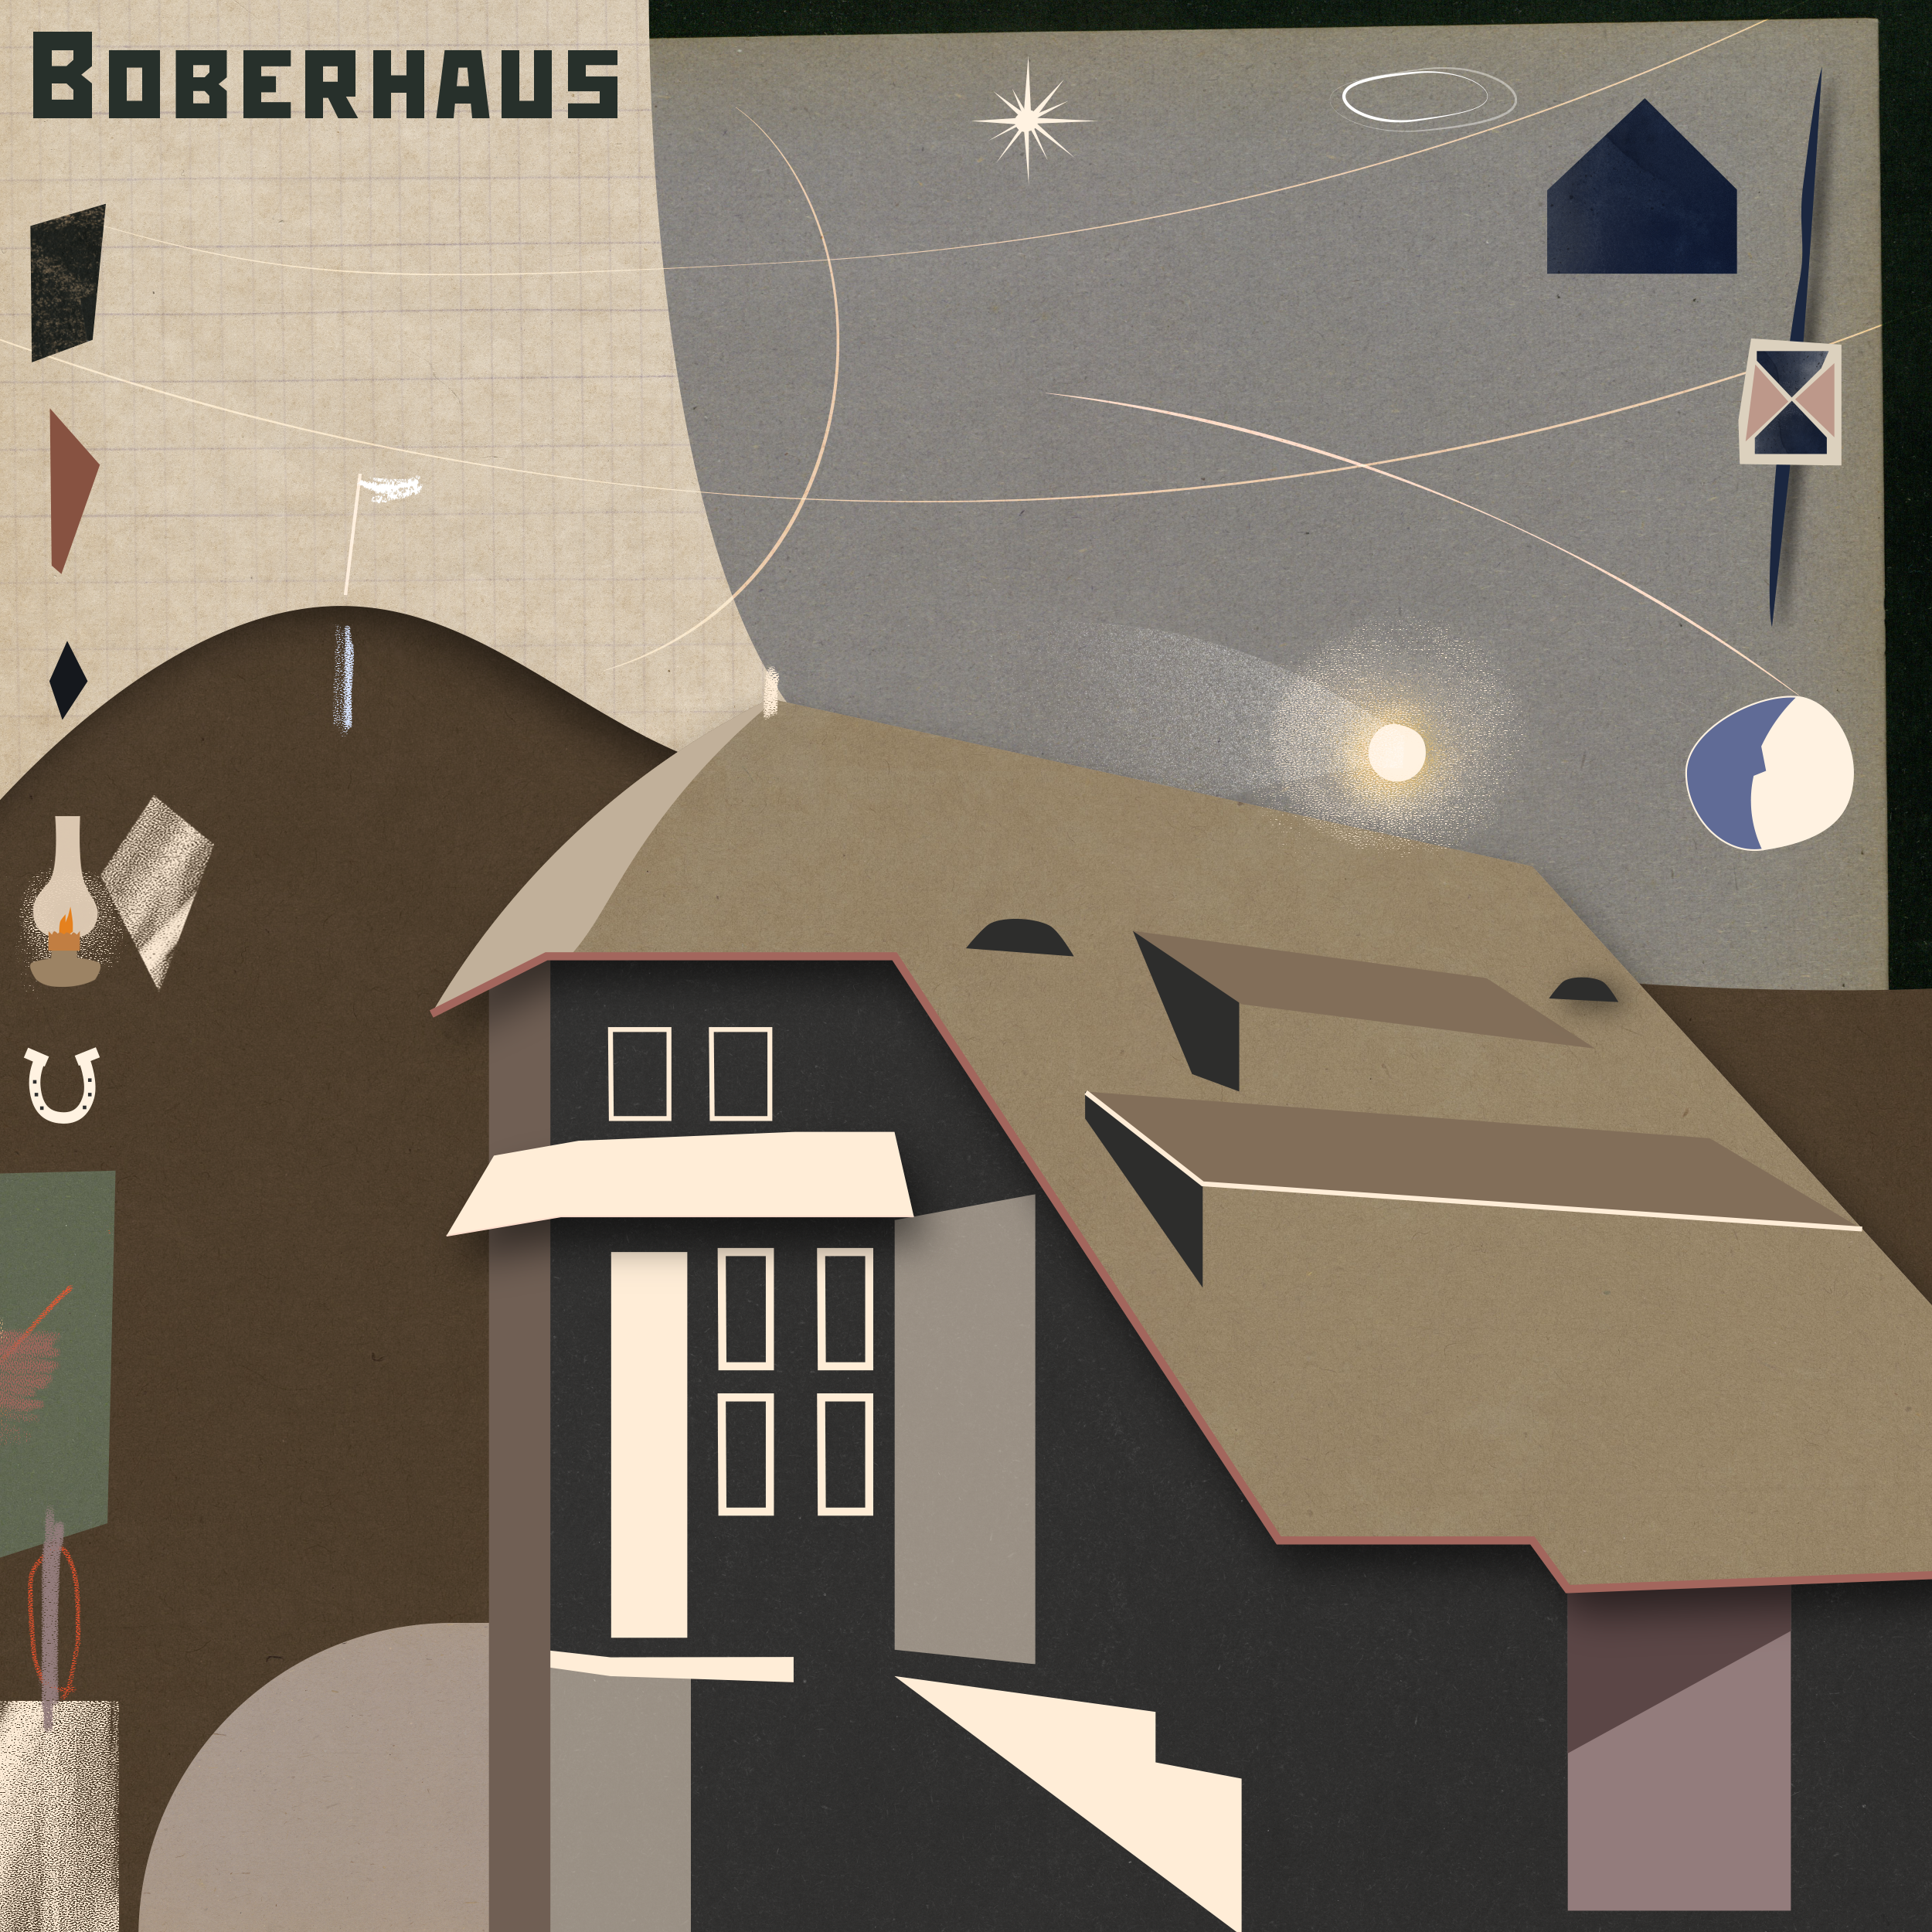 Boberhaus